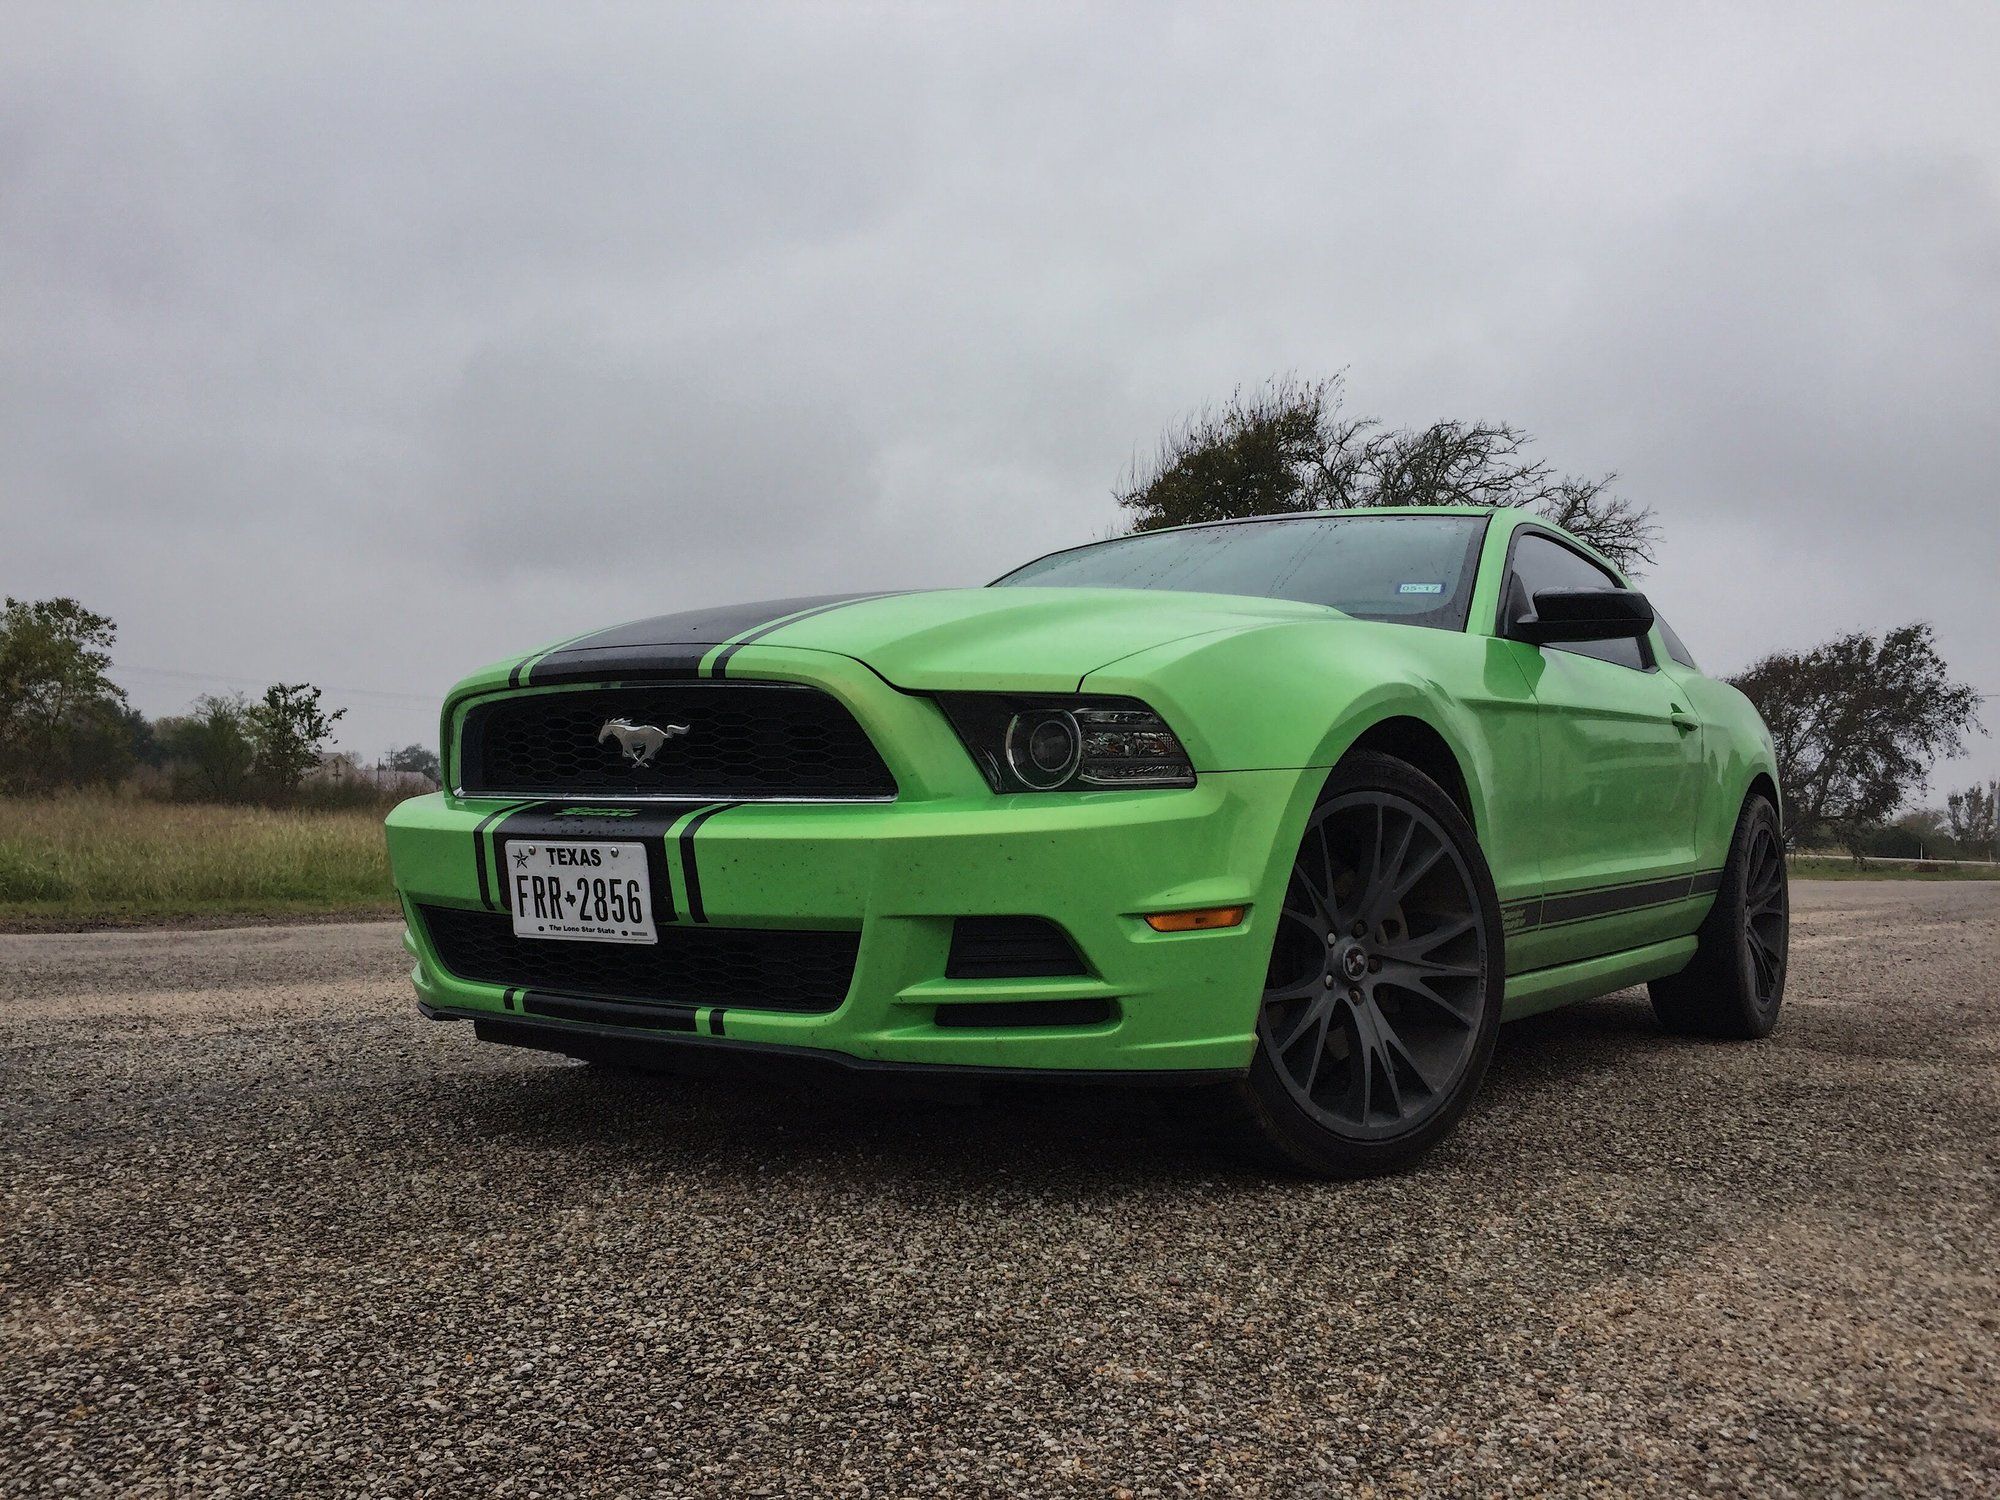 2013 Mustang
V6 HPDE/Track -  (CYCLN3.7)